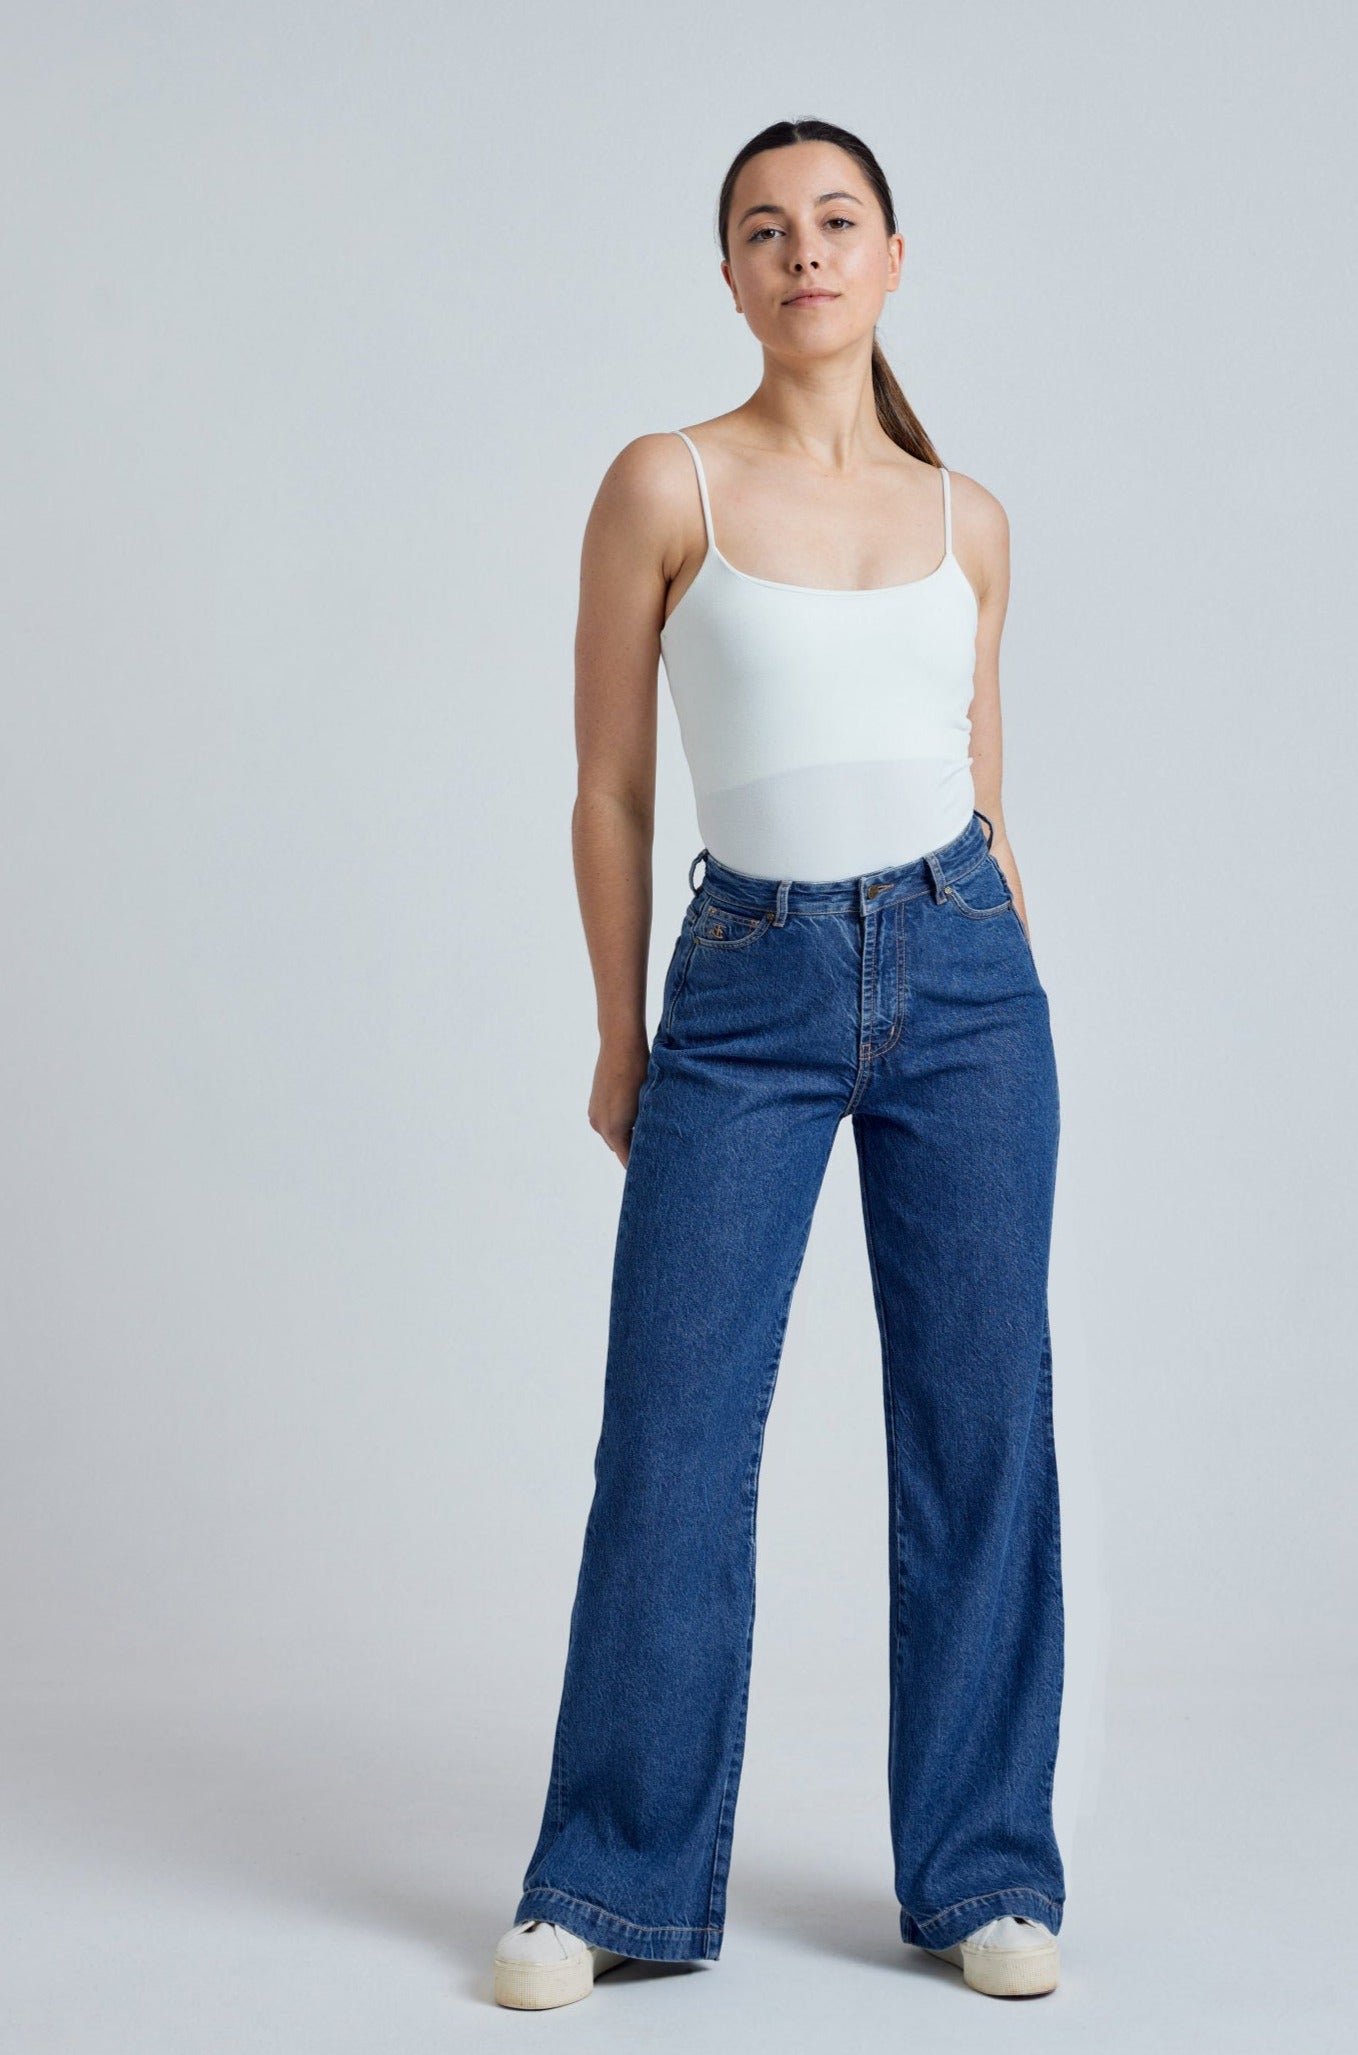 ETTA High Waist - GOTS Organic Cotton Jeans by Flax & Loom, 25" / Regular